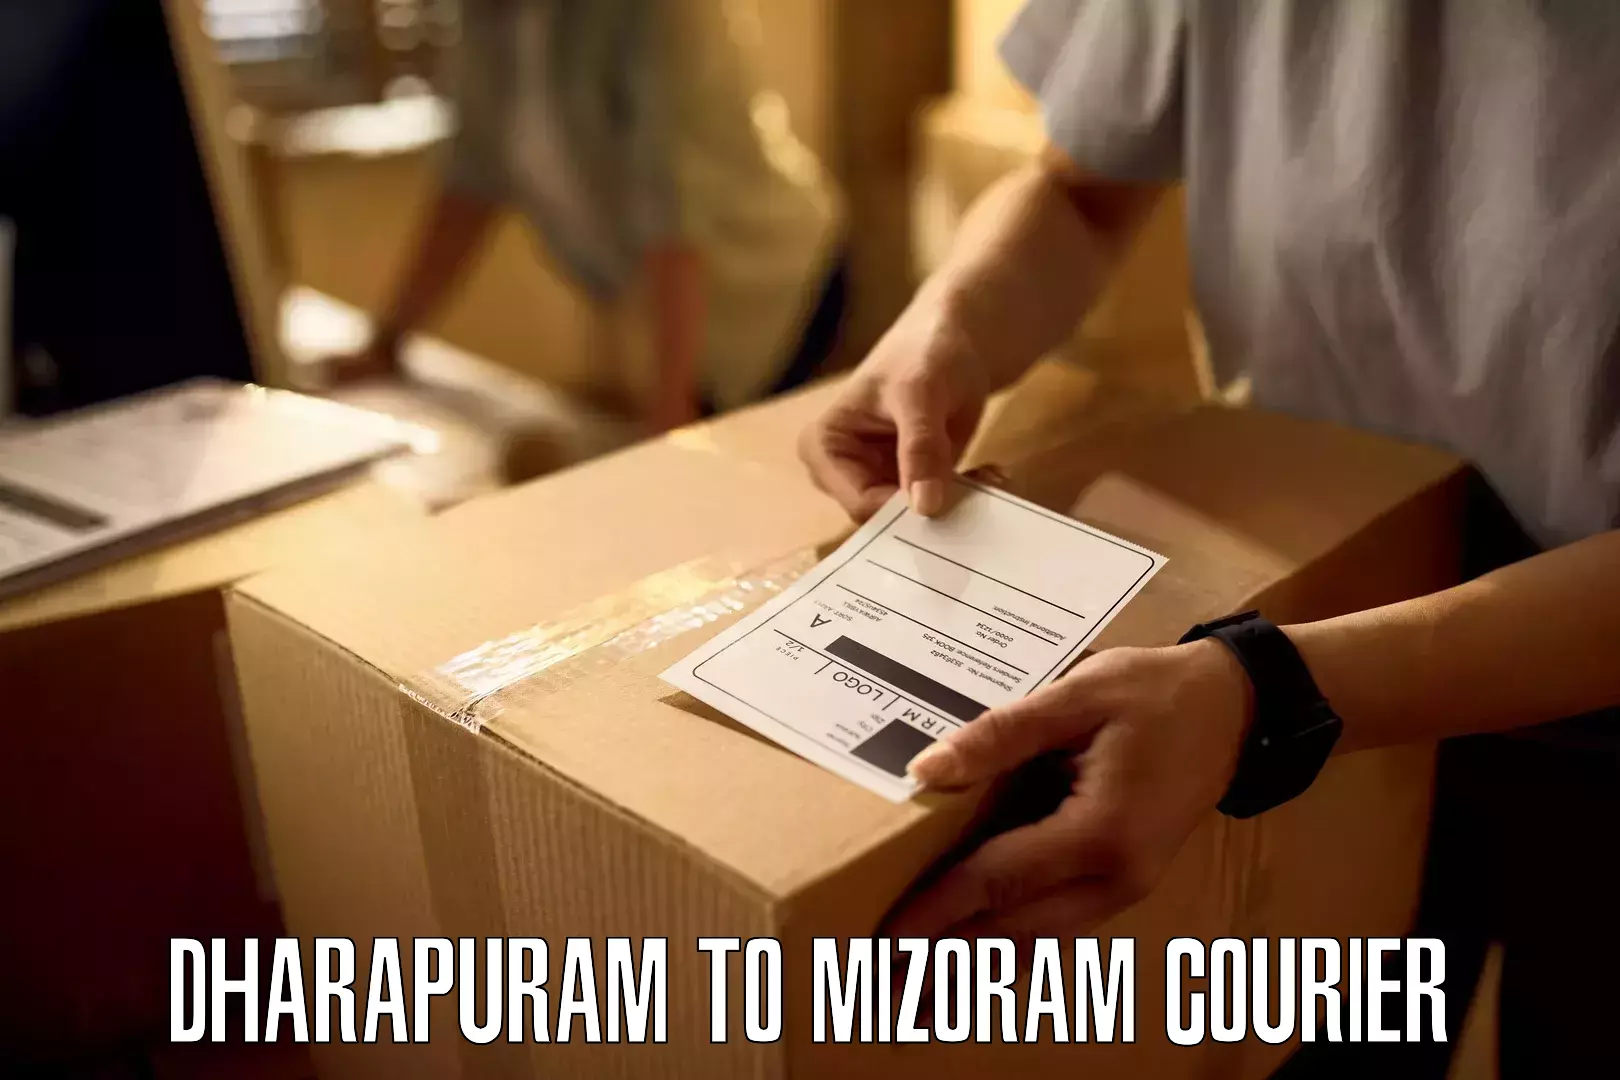 24-hour courier service Dharapuram to Mizoram